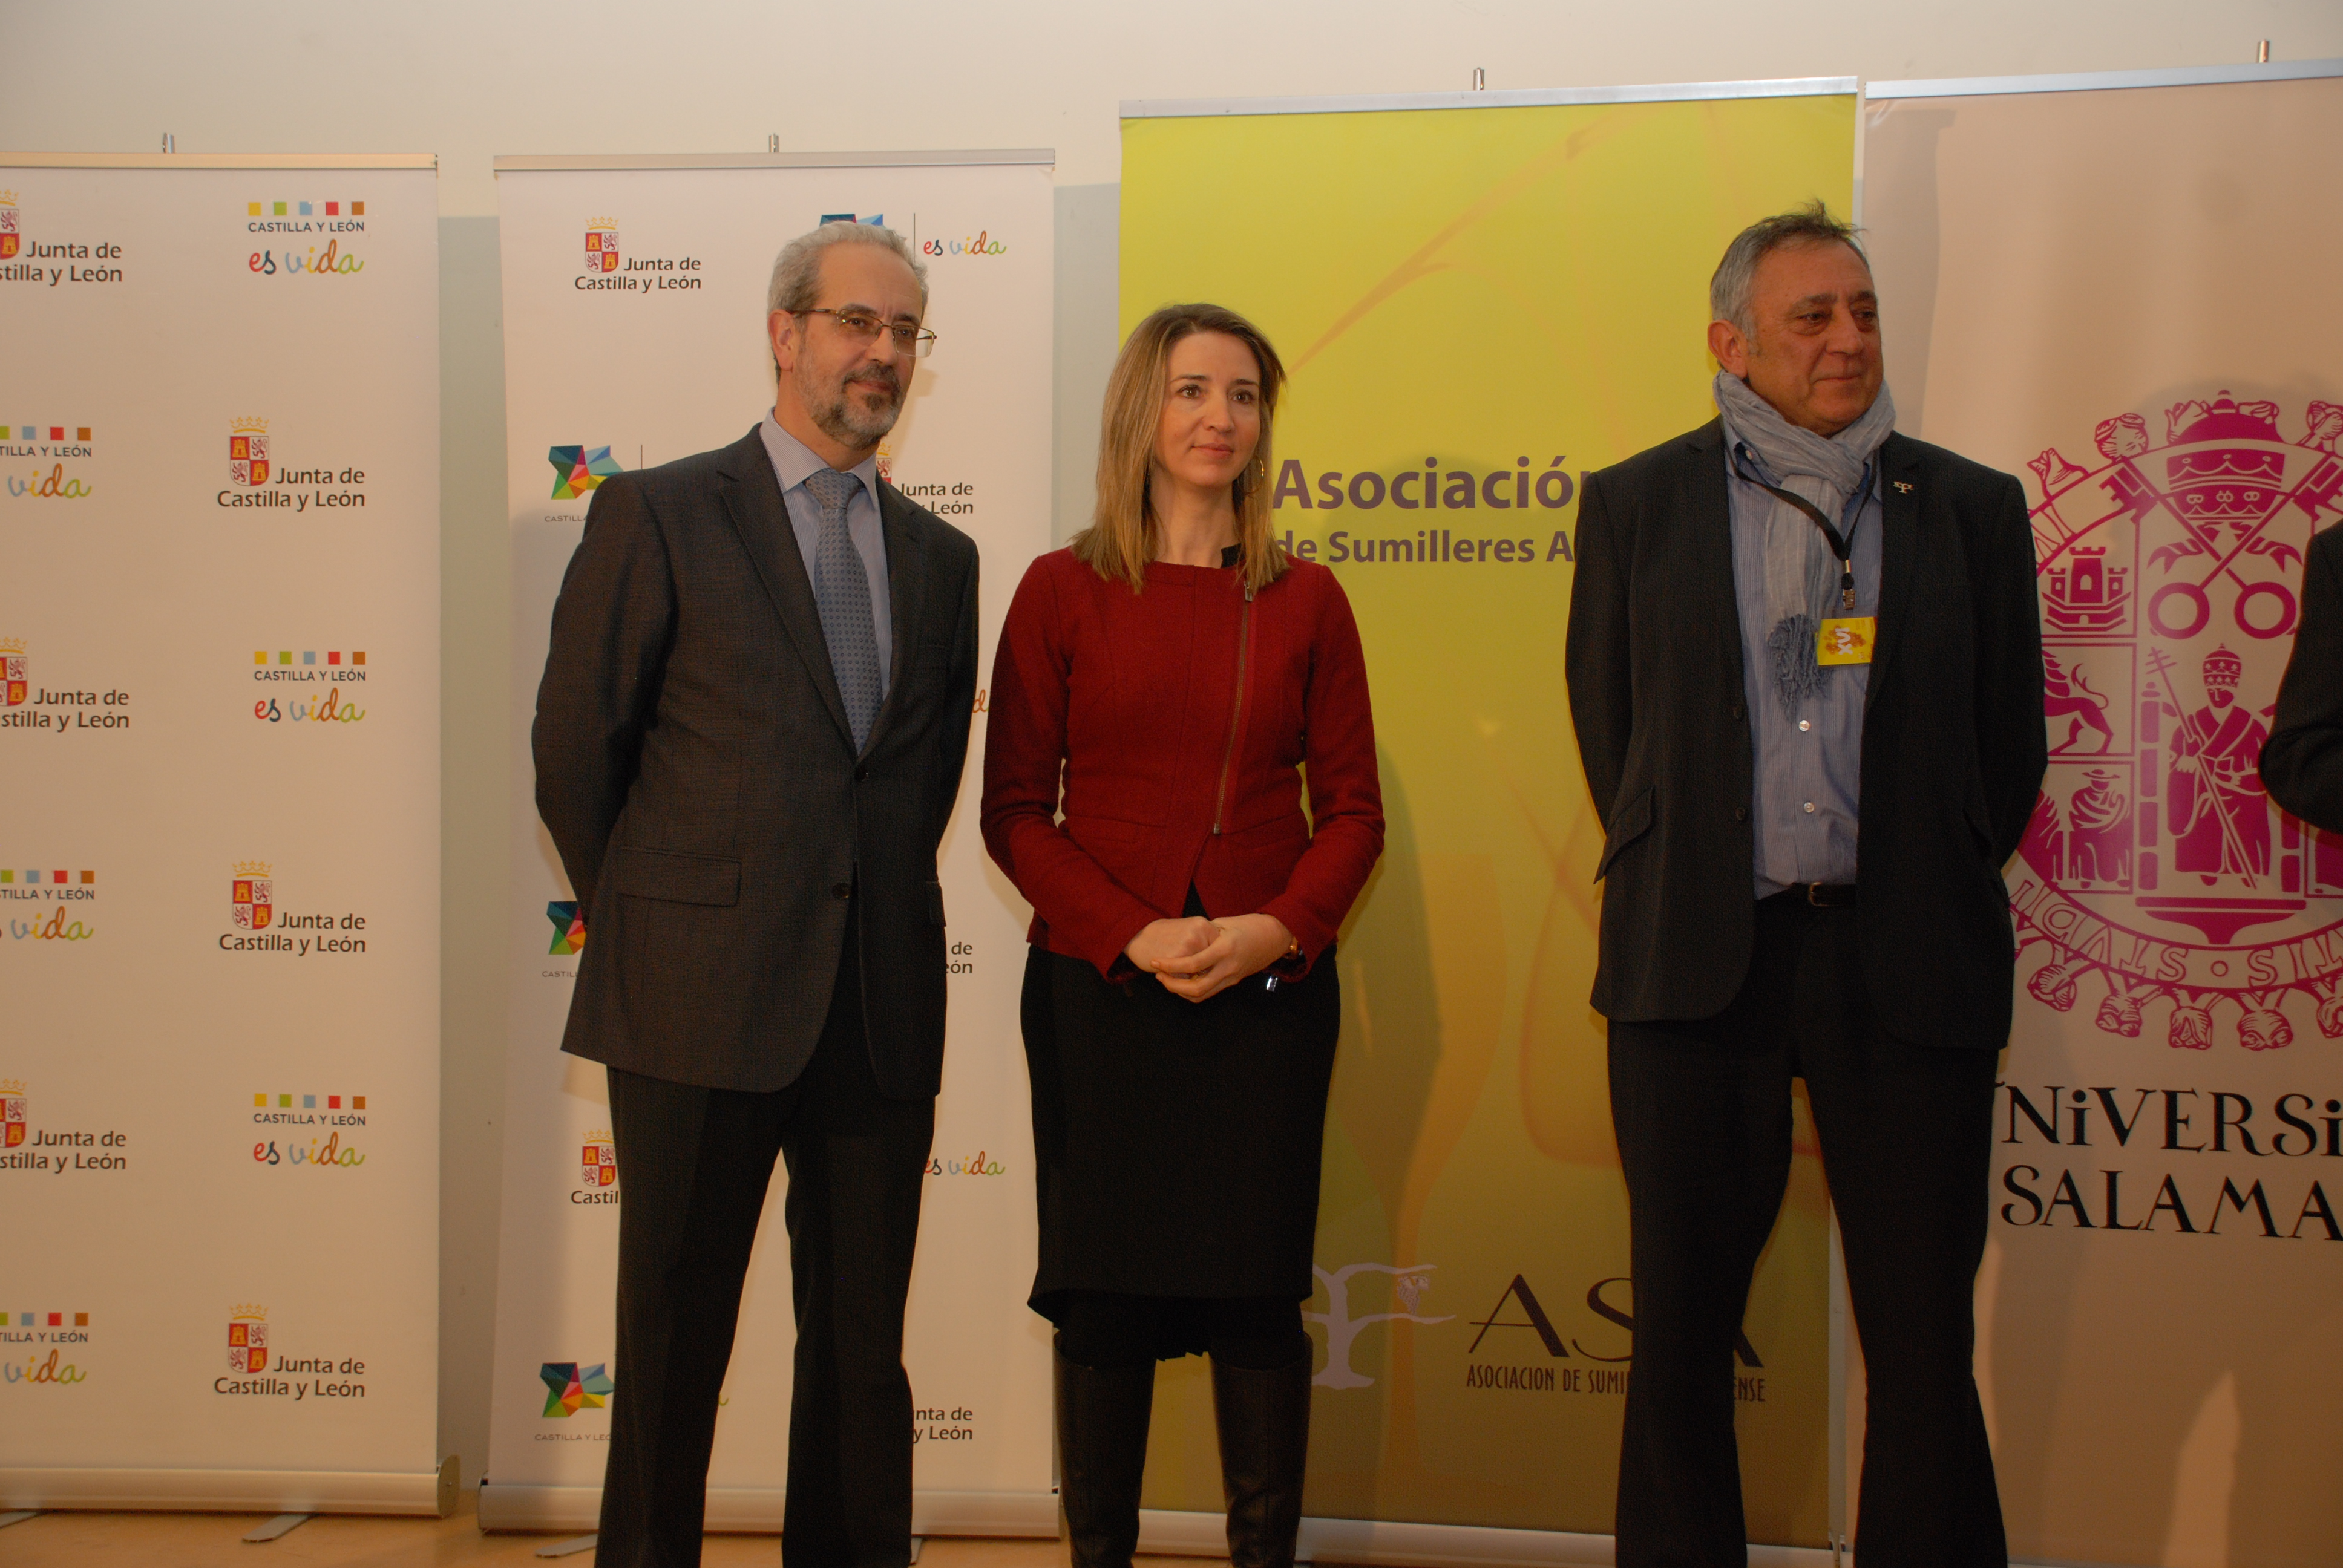 El rector de la Universidad de Salamanca, Daniel Hernández Ruipérez, recibe el “Pin de Oro” de la Asociación de Sumilleres de Ávila